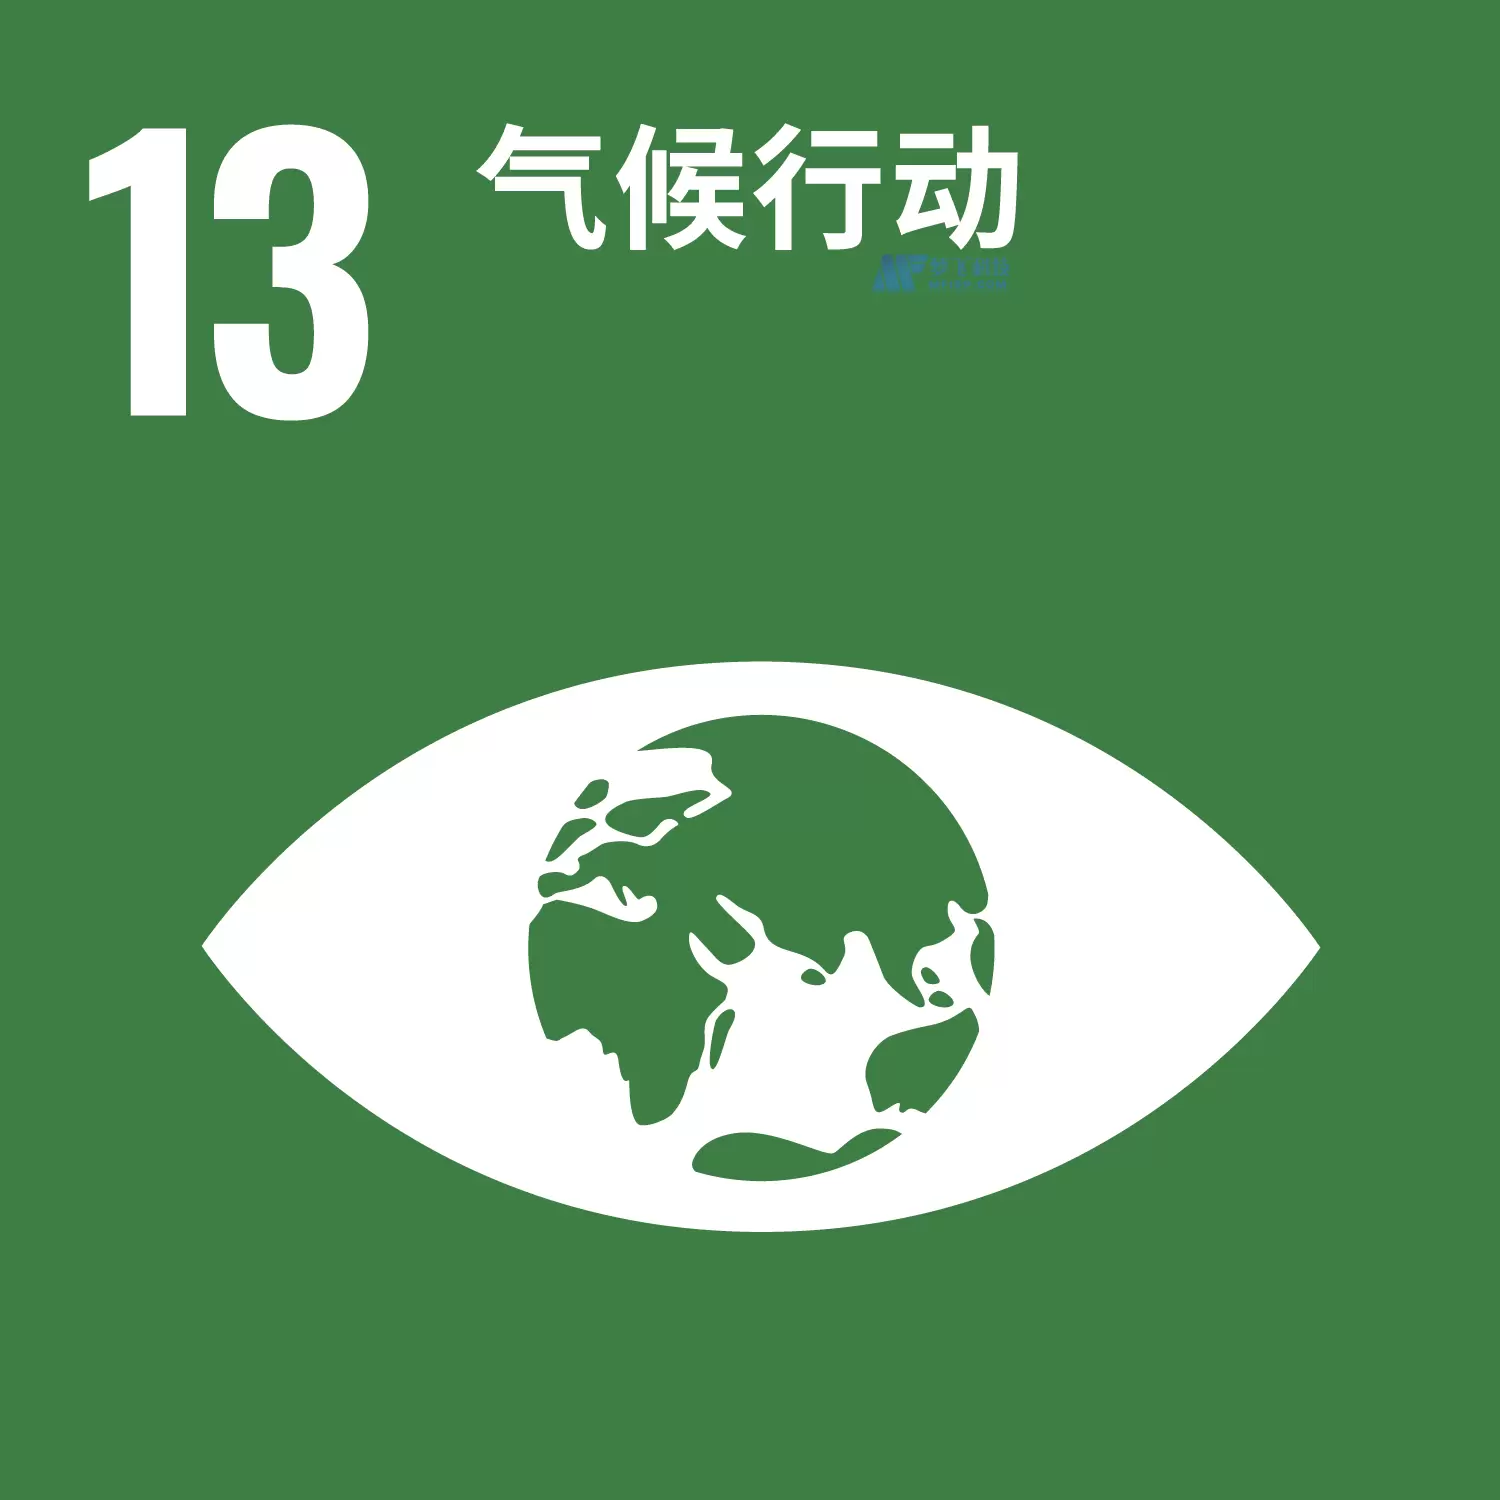 17个可持续发展目标